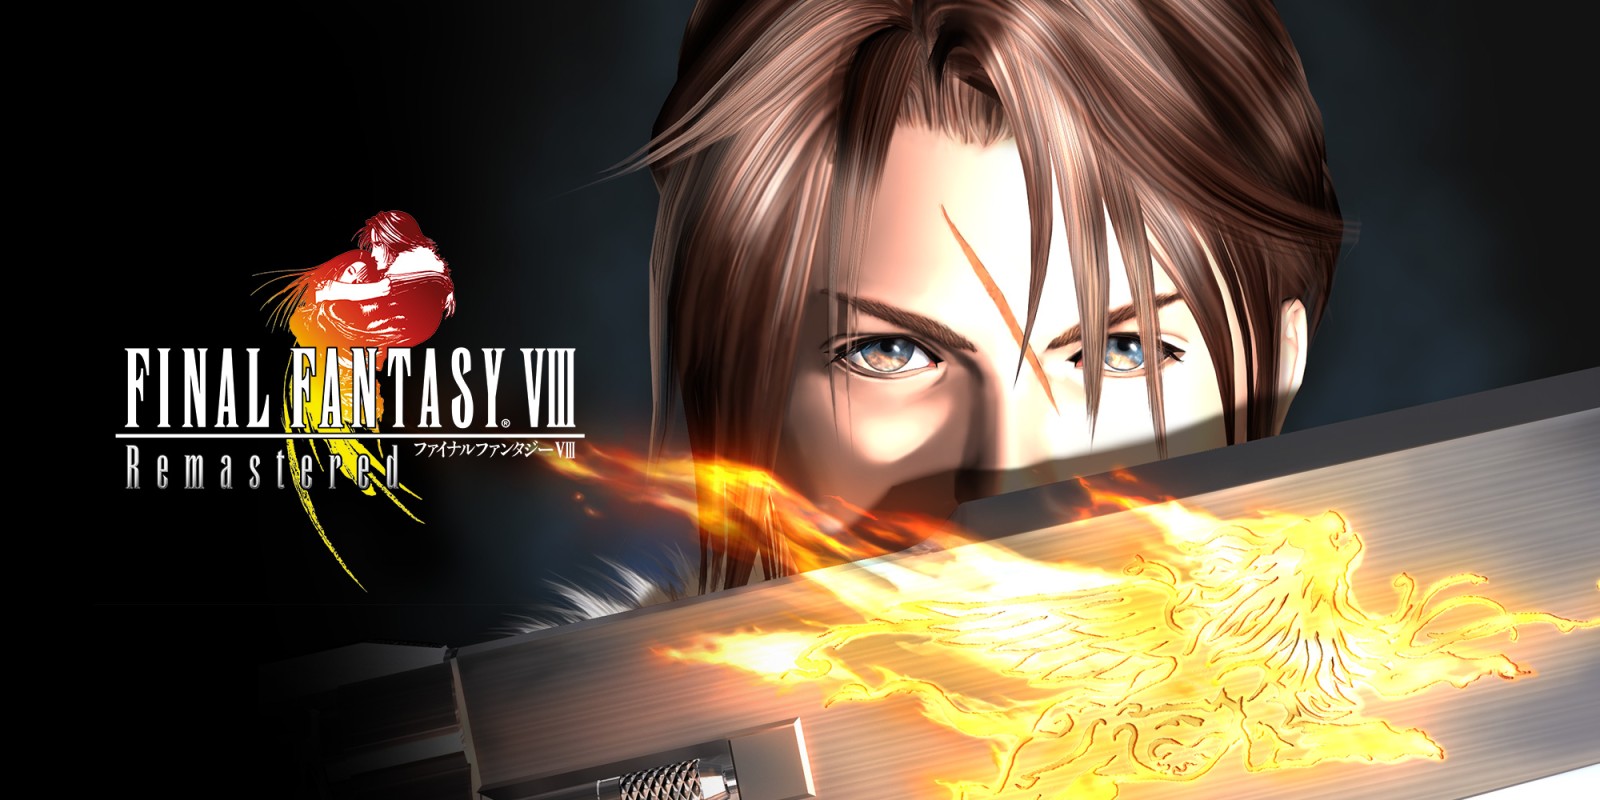 FINAL FANTASY VIII Remaster sekarang tersedia di PC, PS4 dan Switch - Luncurkan Trailer